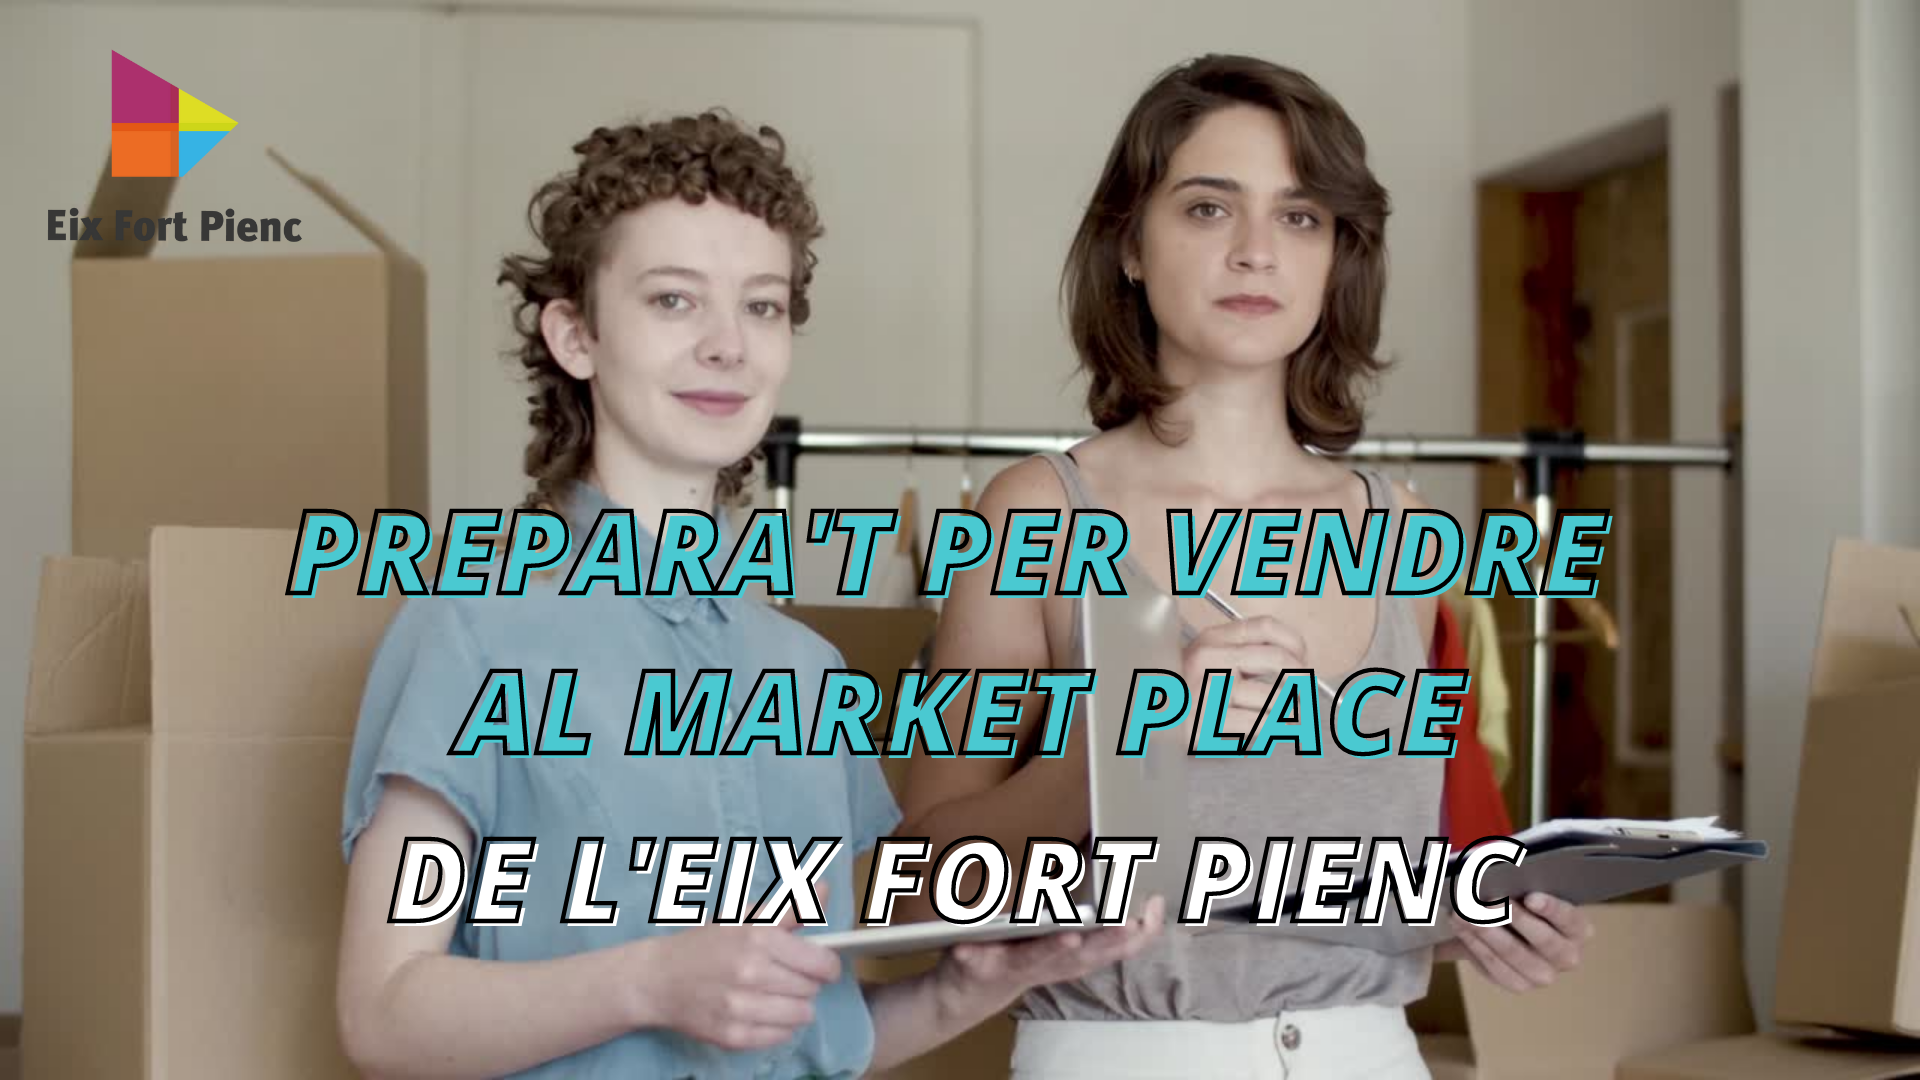 Presentació-Tutorial Market Place Eix Fort Pienc